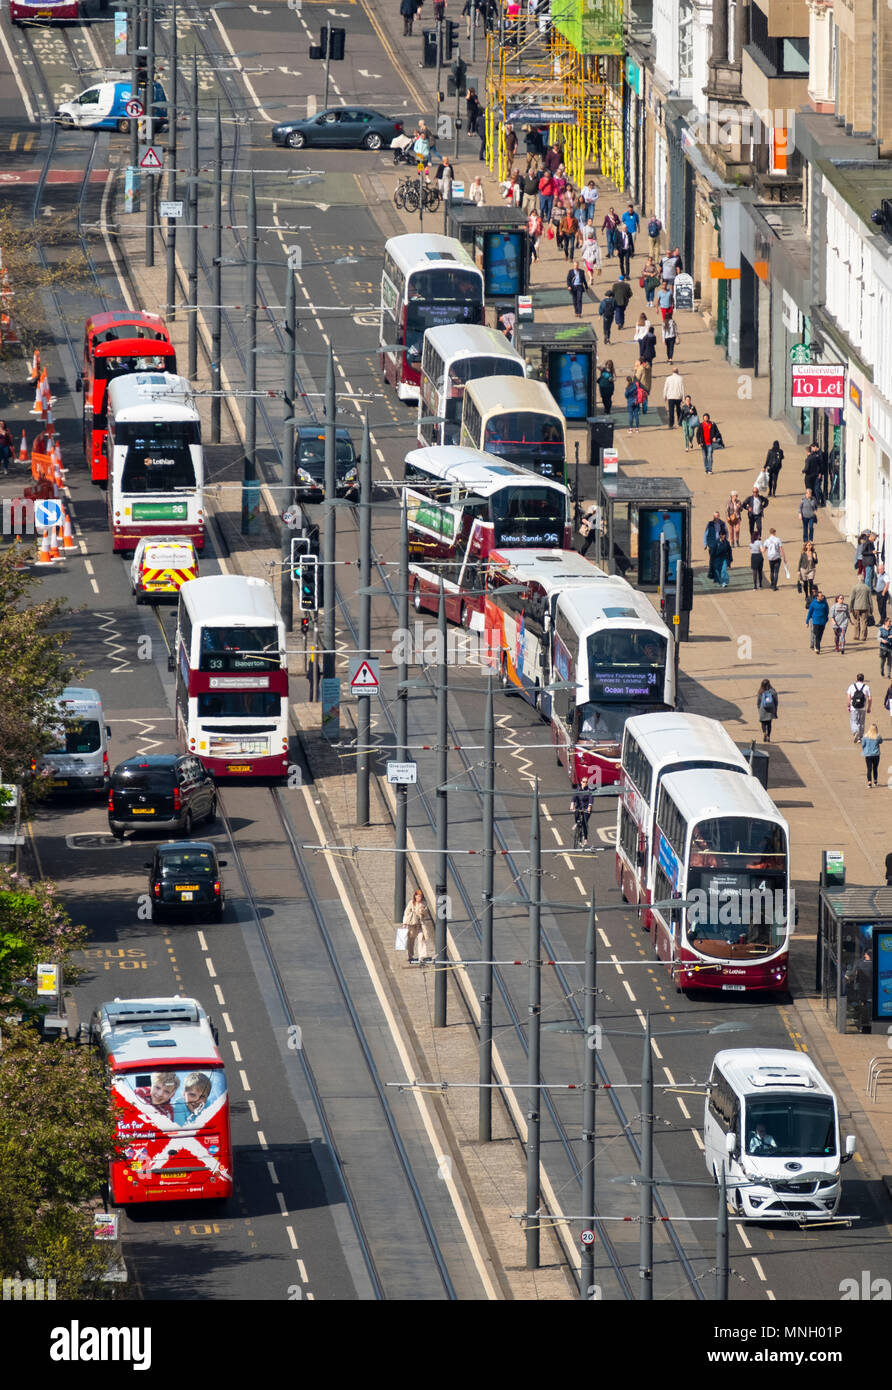 Besetzt die Busse im öffentlichen Personennahverkehr Verkehr auf der Princes Street Einkaufsstraße im Zentrum von Edinburgh, Schottland, Großbritannien Stockfoto